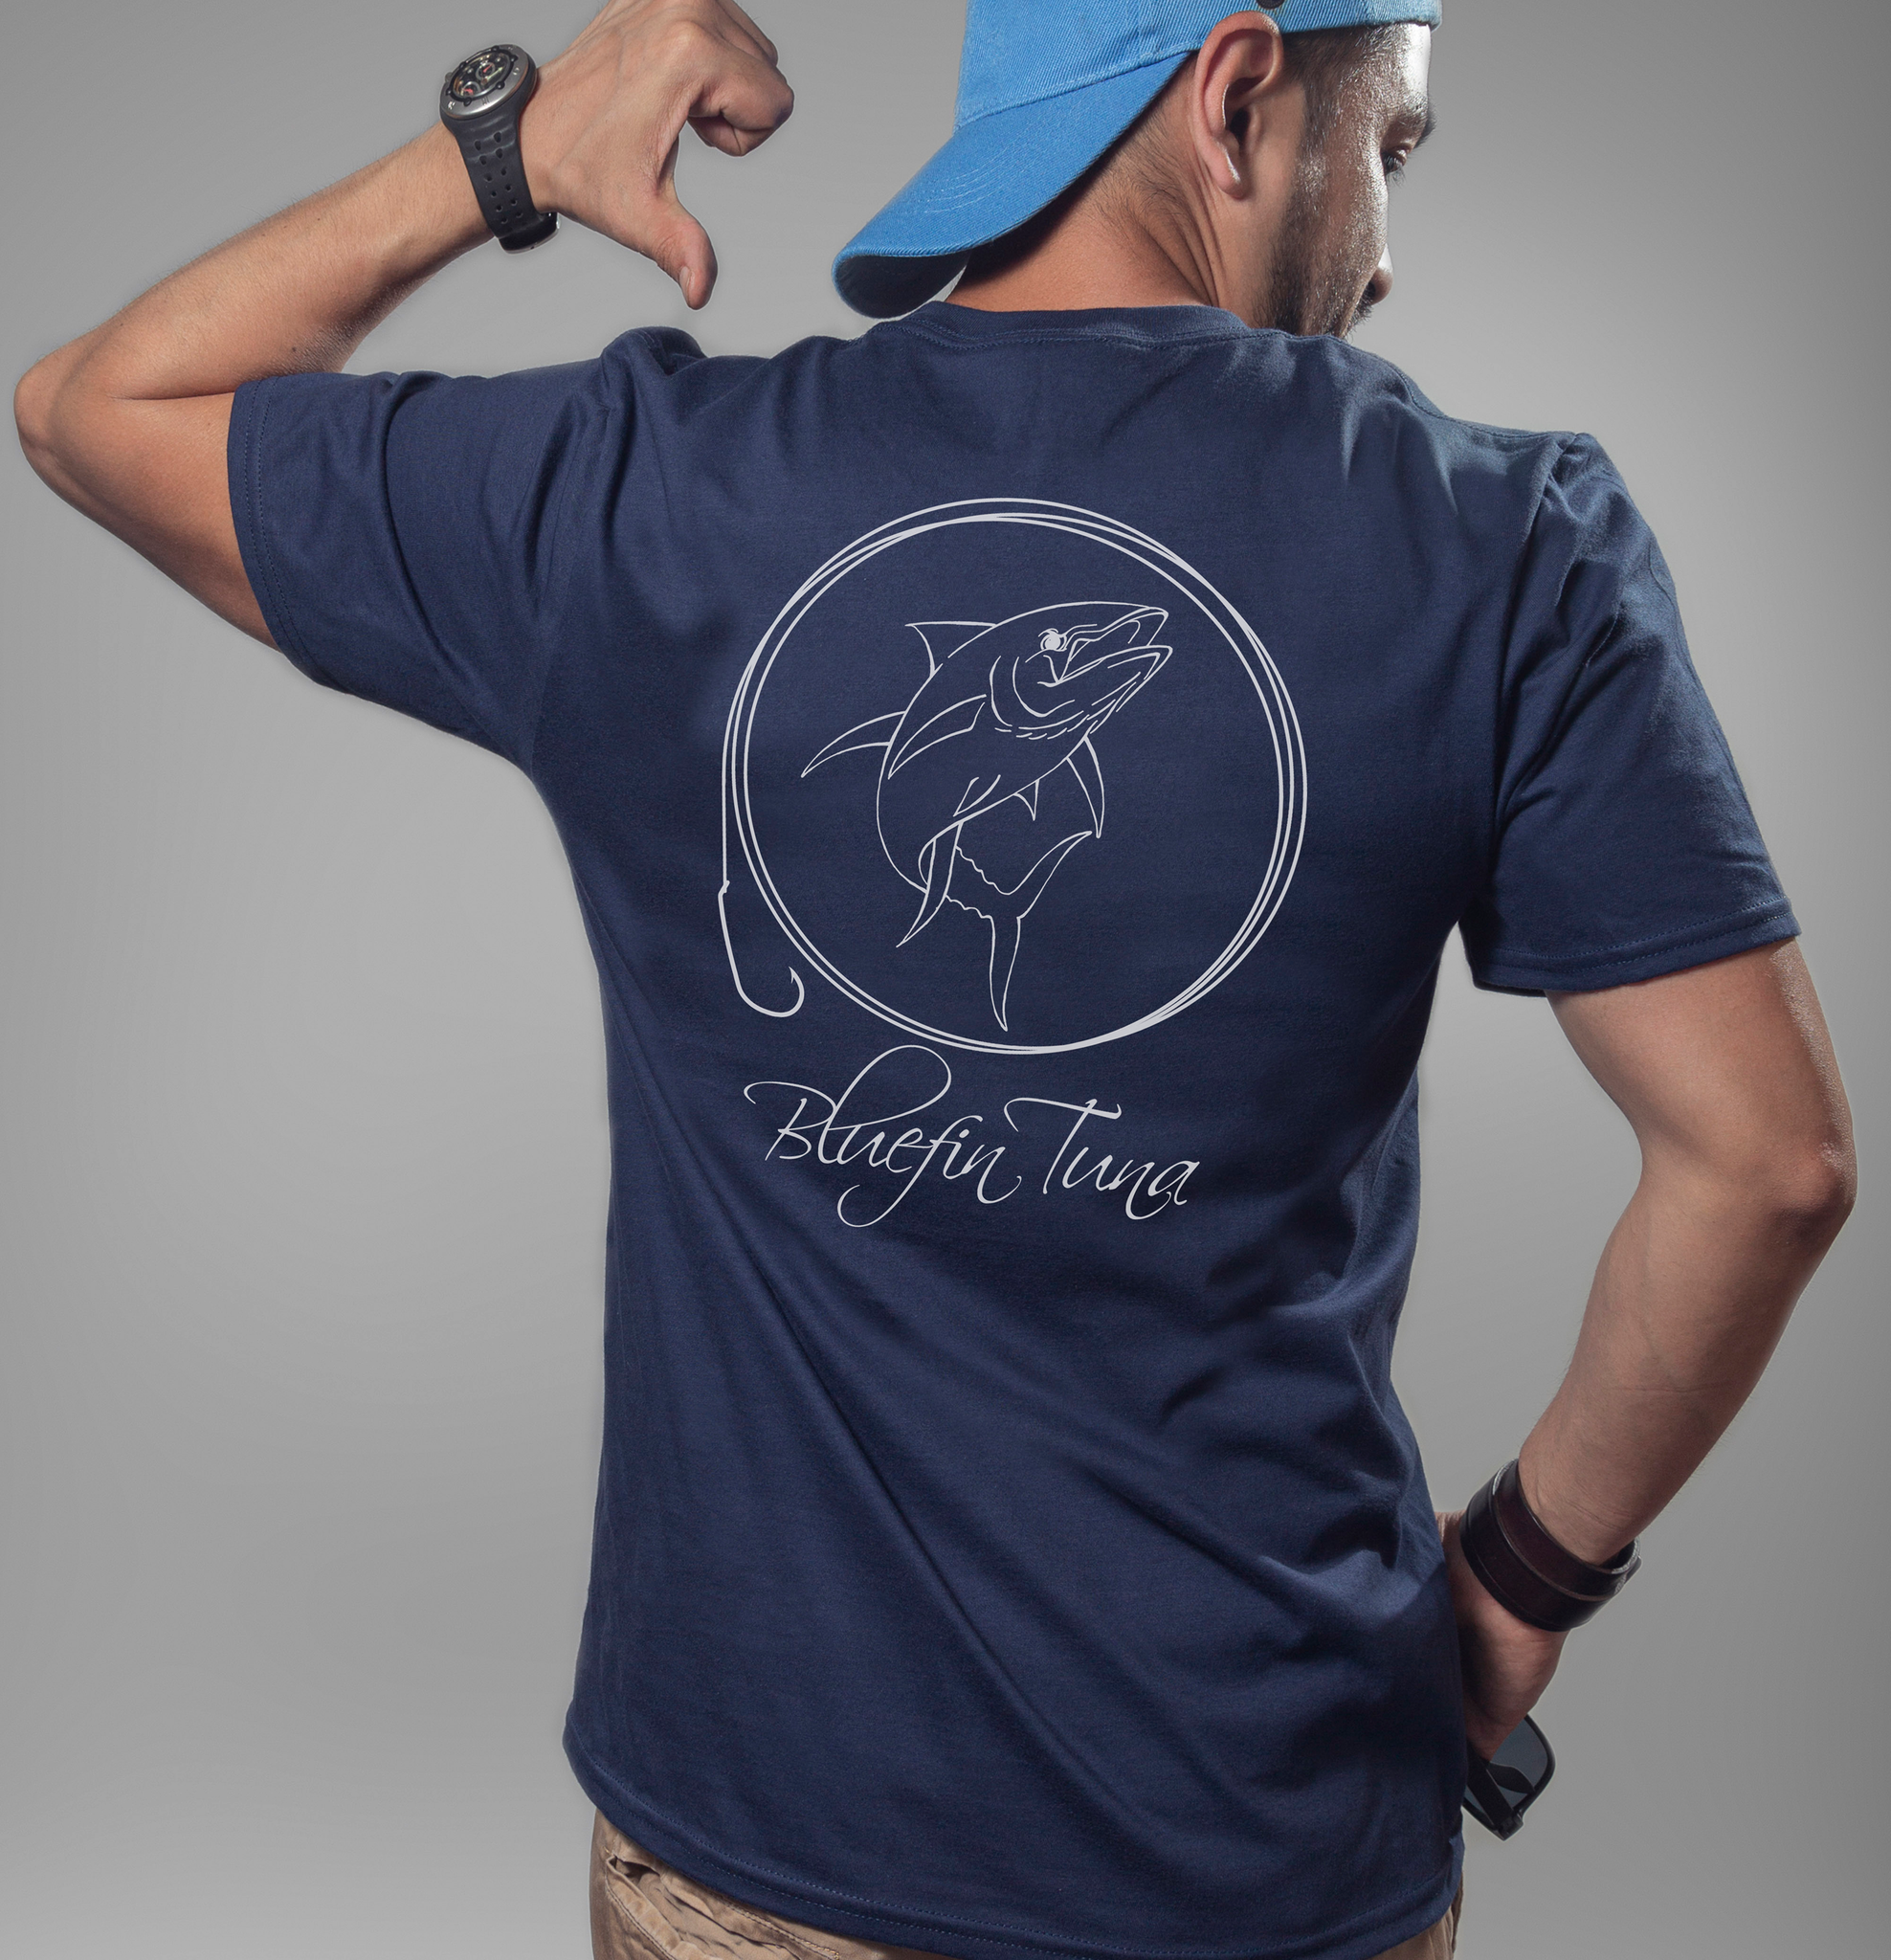 Bluefin Tuna T-Shirt, Fish T-Shirt, Bluefin Tuna Shirt, Fishing